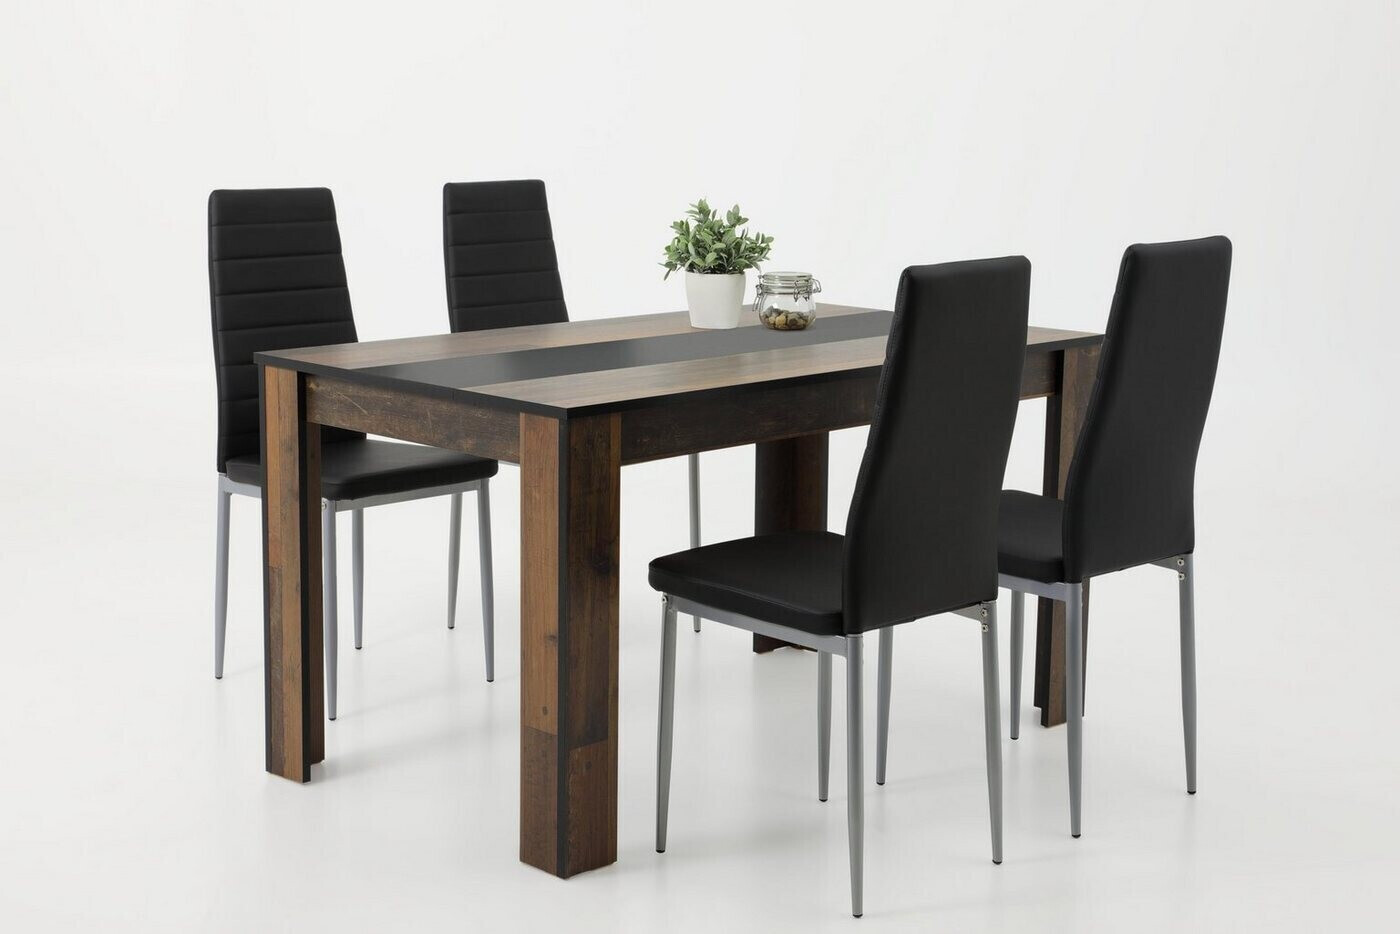 Oldwood 4x 179,99 Tisch Preisvergleich bei schwarz | Hela (811893) Stuhl schwarz/weiß Helene ab IV €